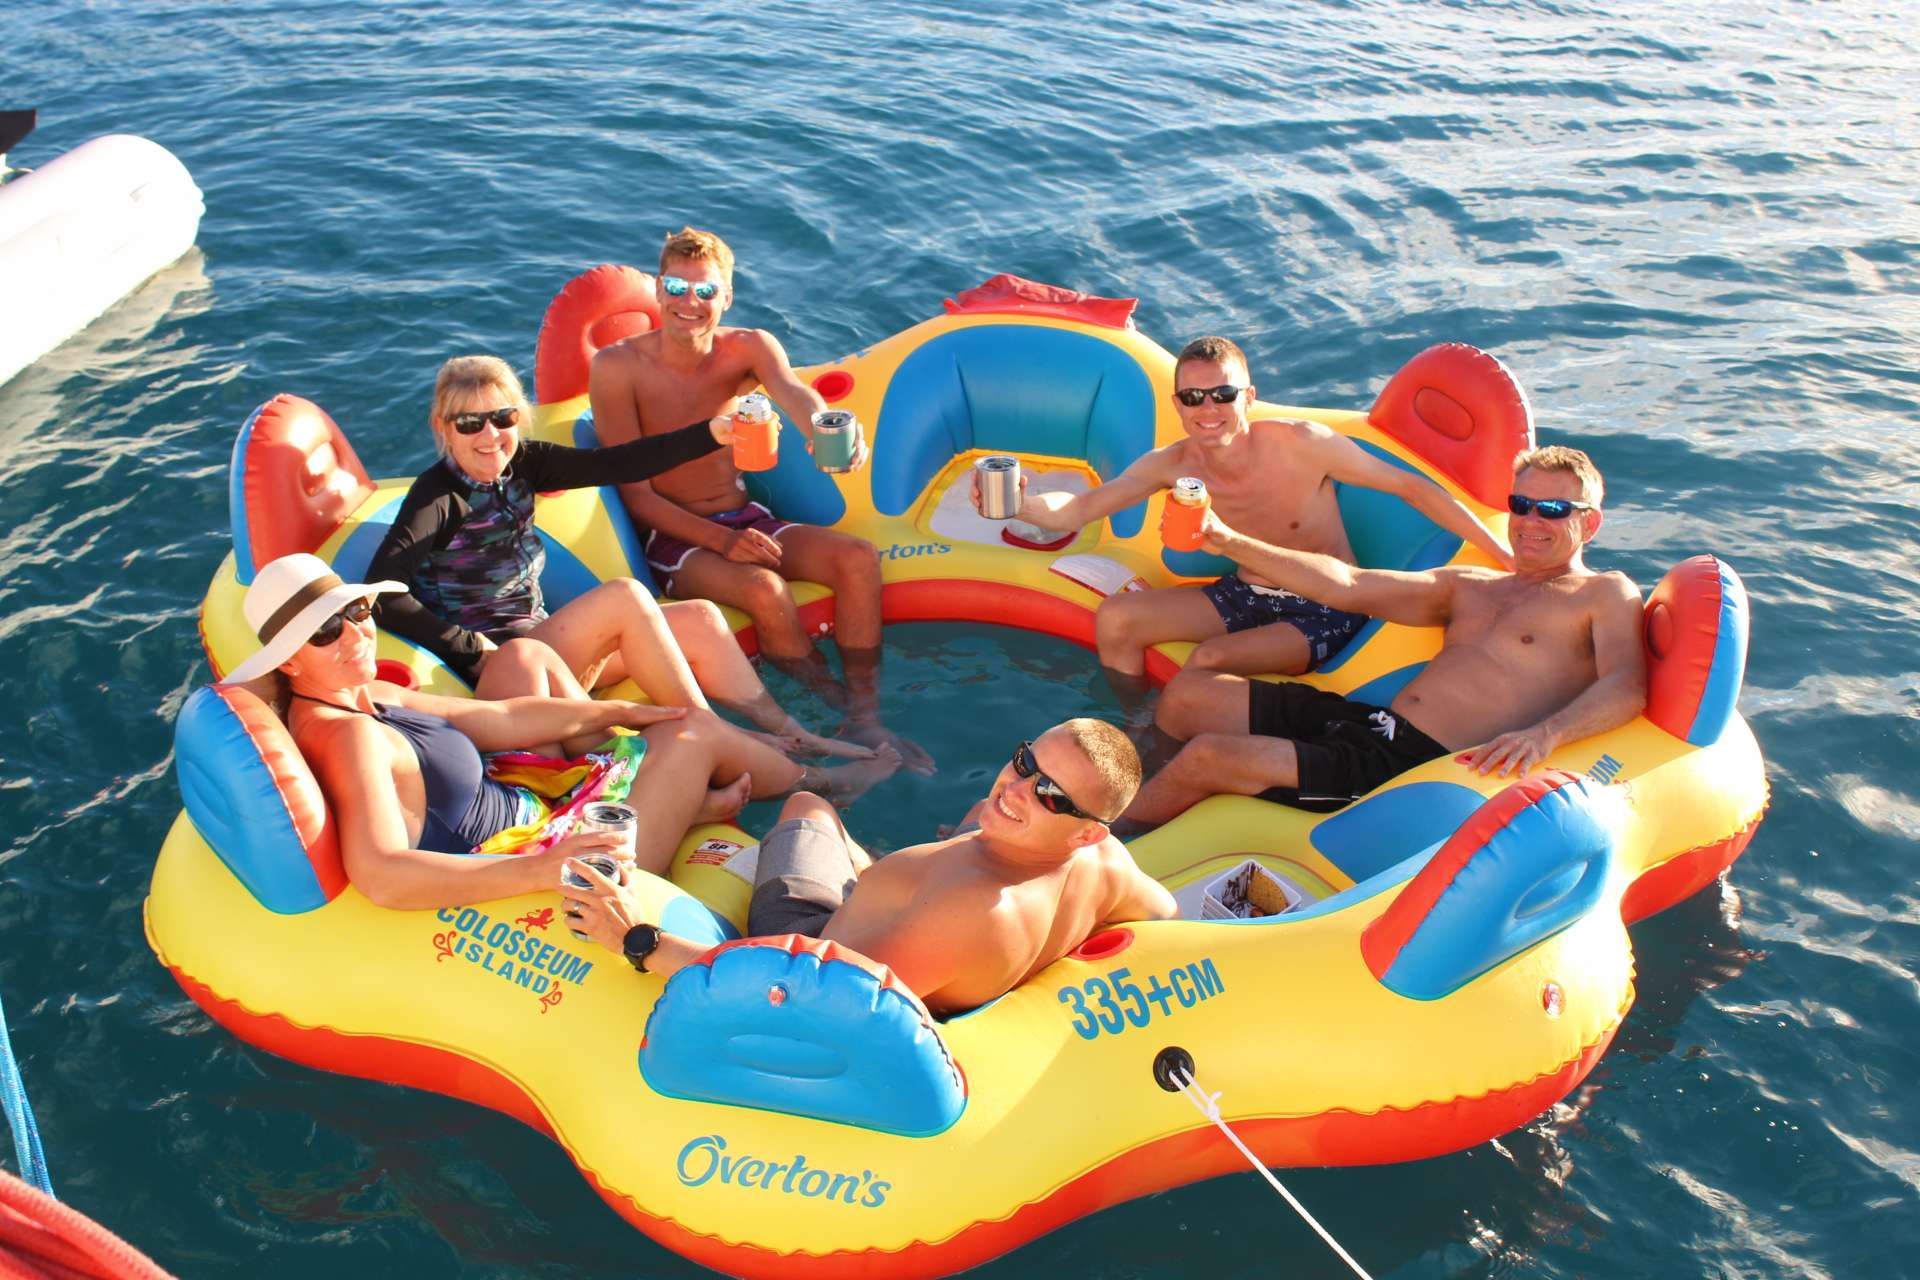 STARFISH Yacht Charter - Party Island Fun in the Sun!